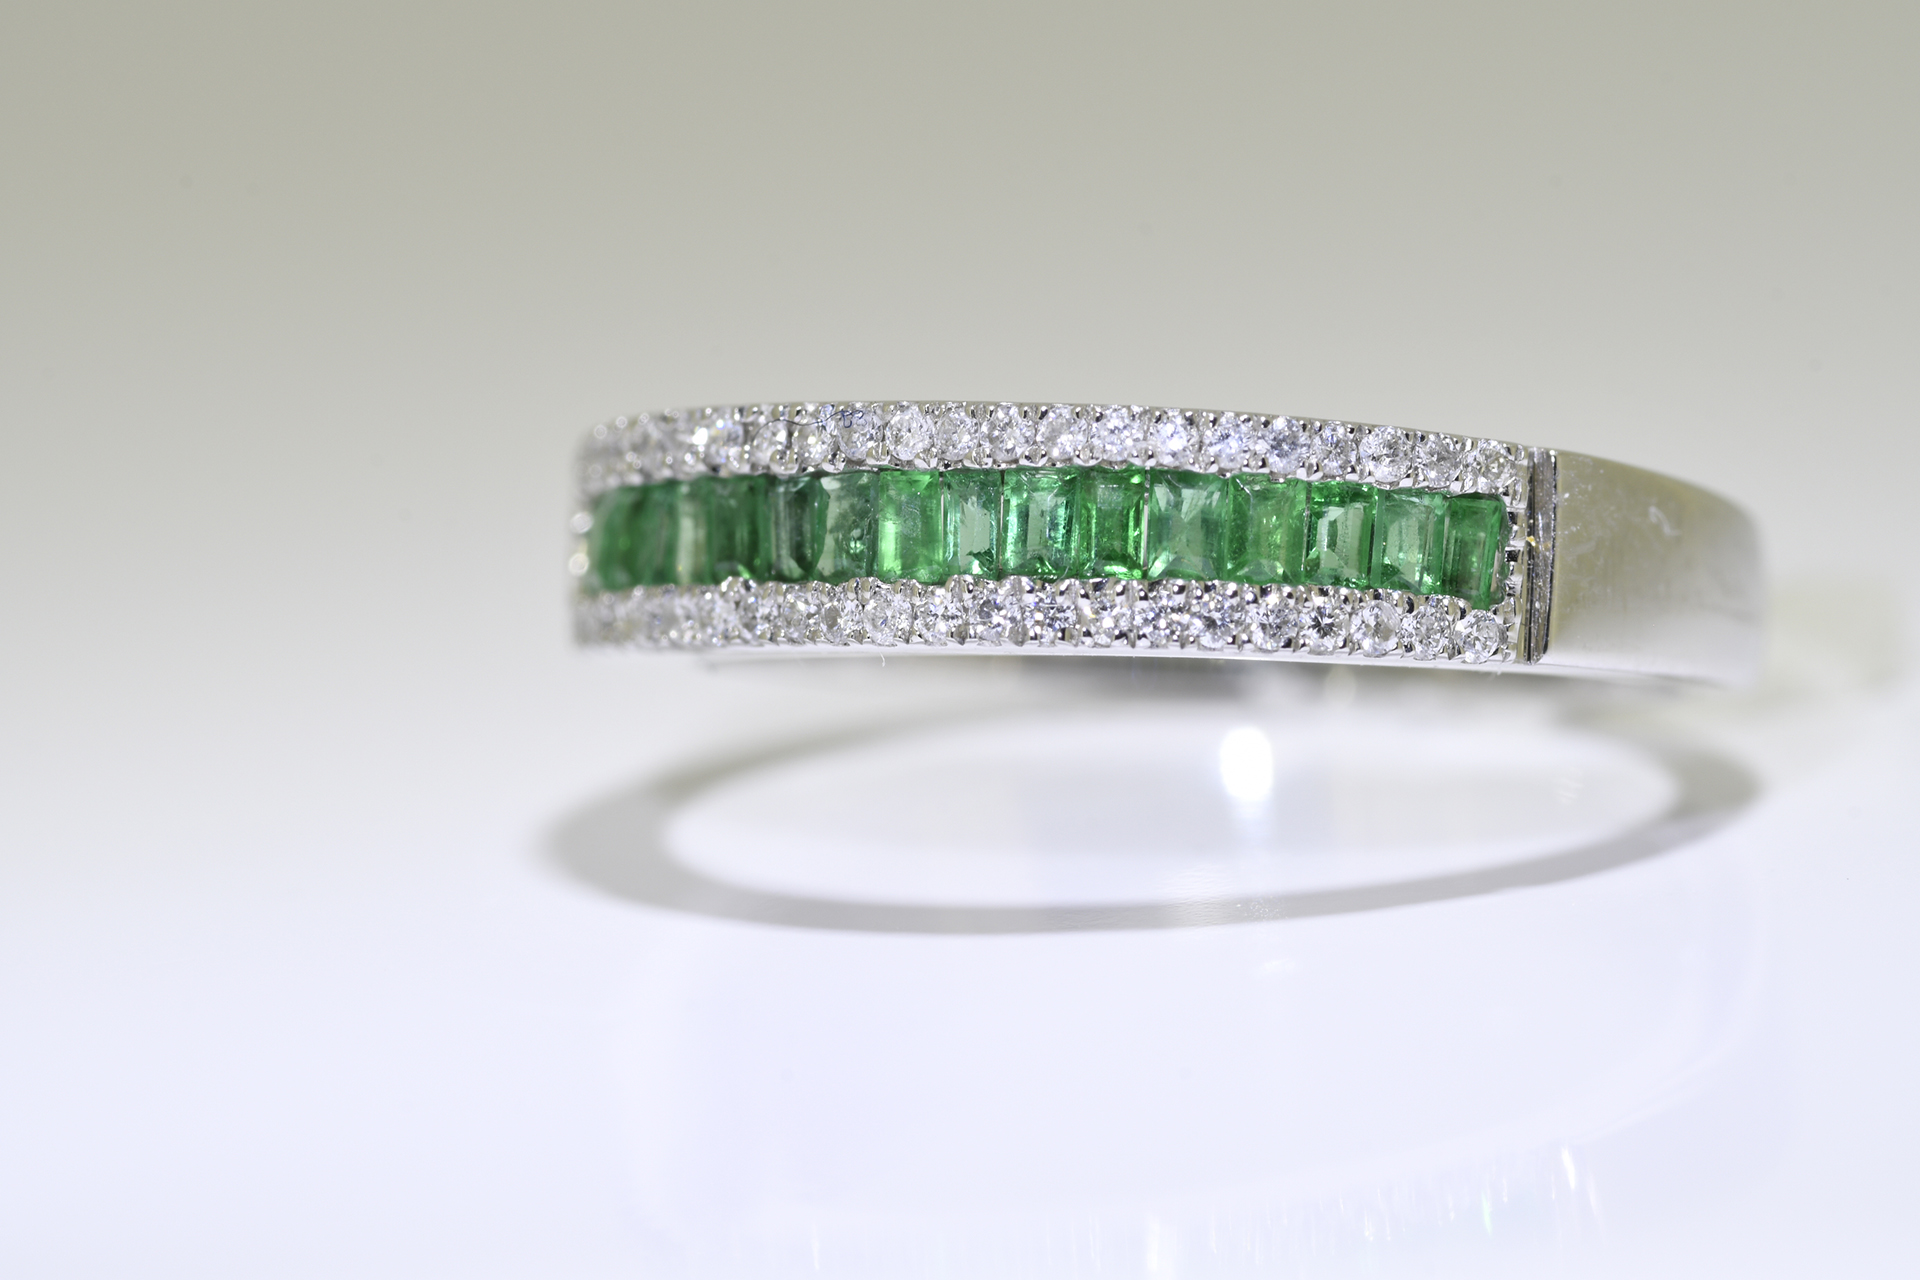 Emerald & diamond ring